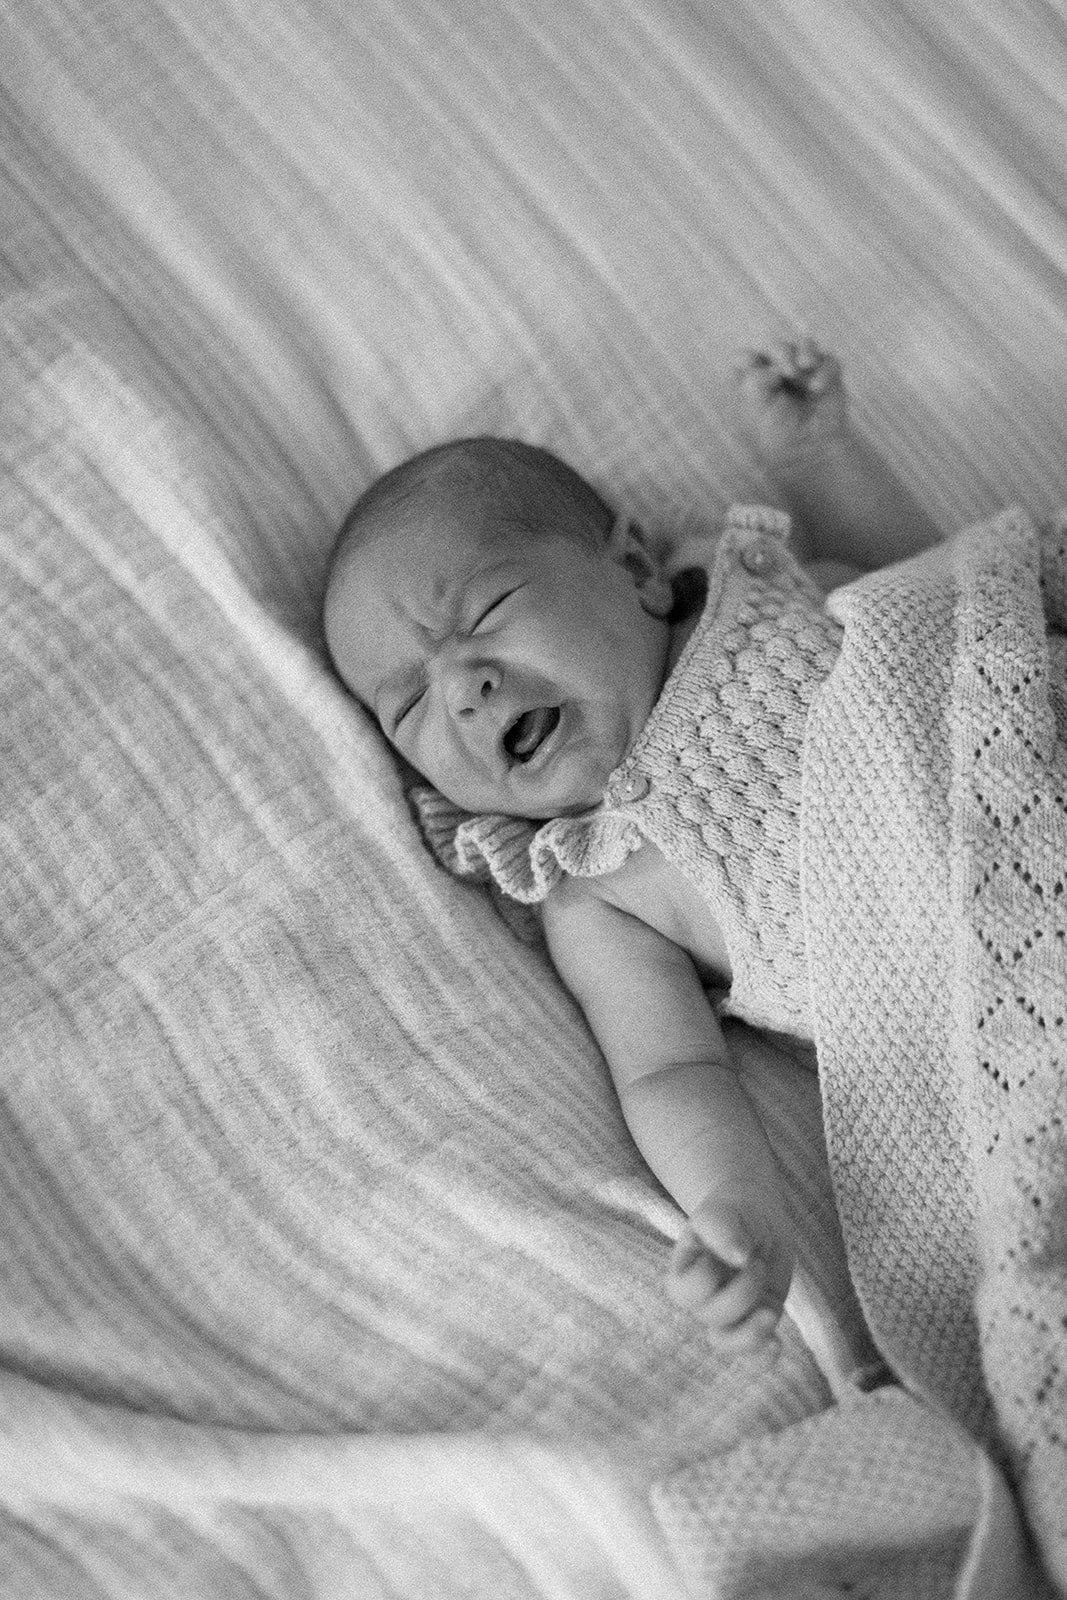  Tunbridge wells newborn photographer baby crying 